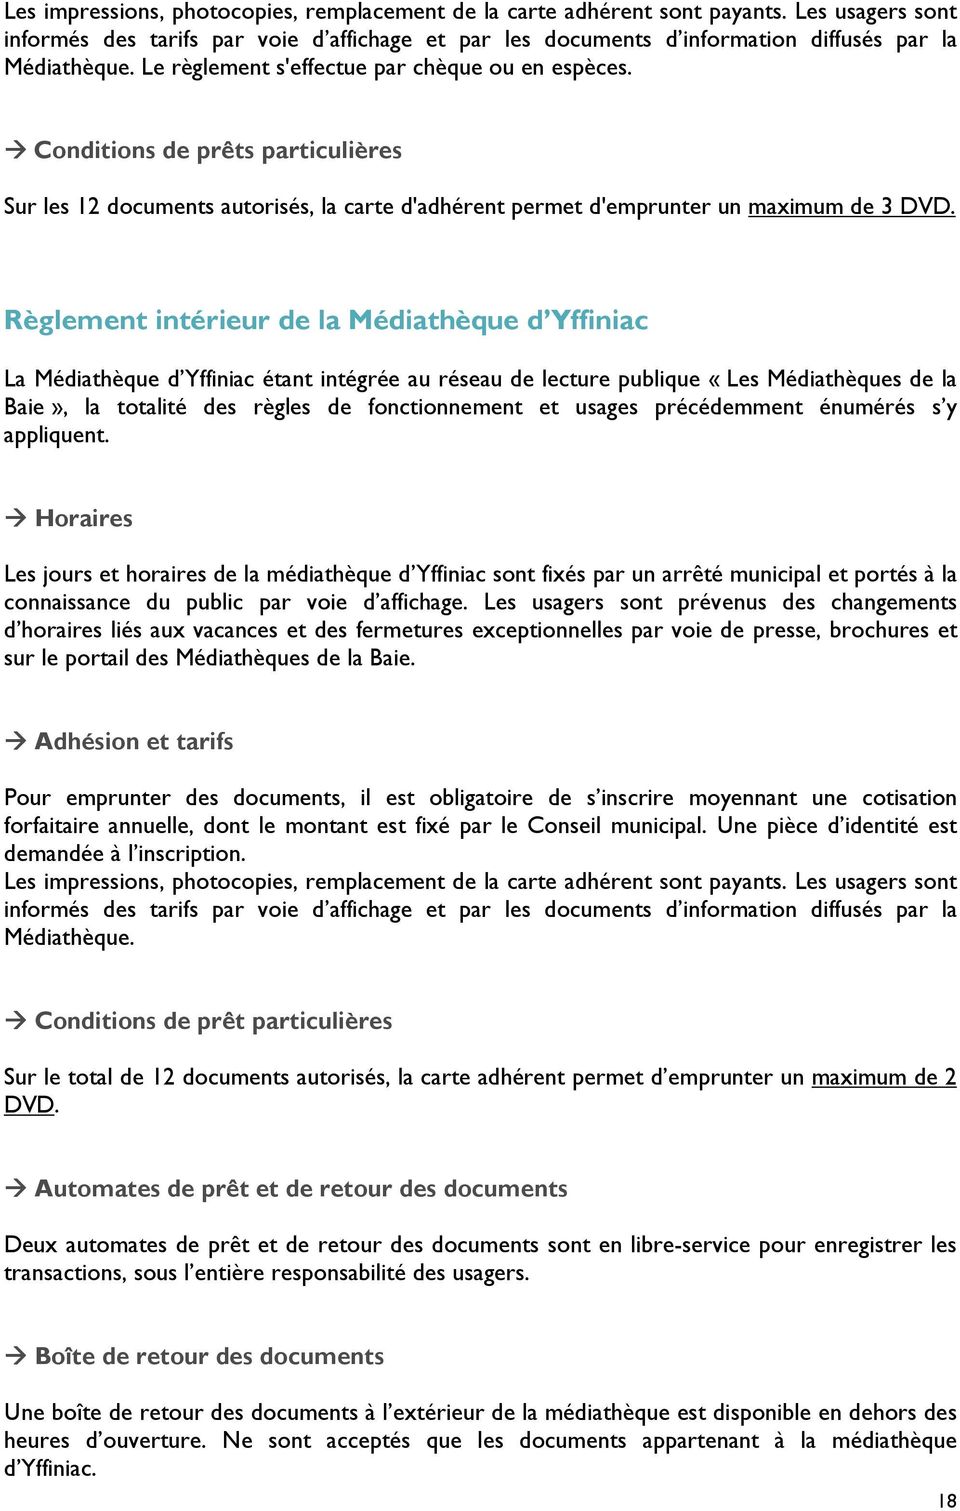 Règlement intérieur de la Médiathèque d Yffiniac La Médiathèque d Yffiniac étant intégrée au réseau de lecture publique «Les Médiathèques de la Baie», la totalité des règles de fonctionnement et